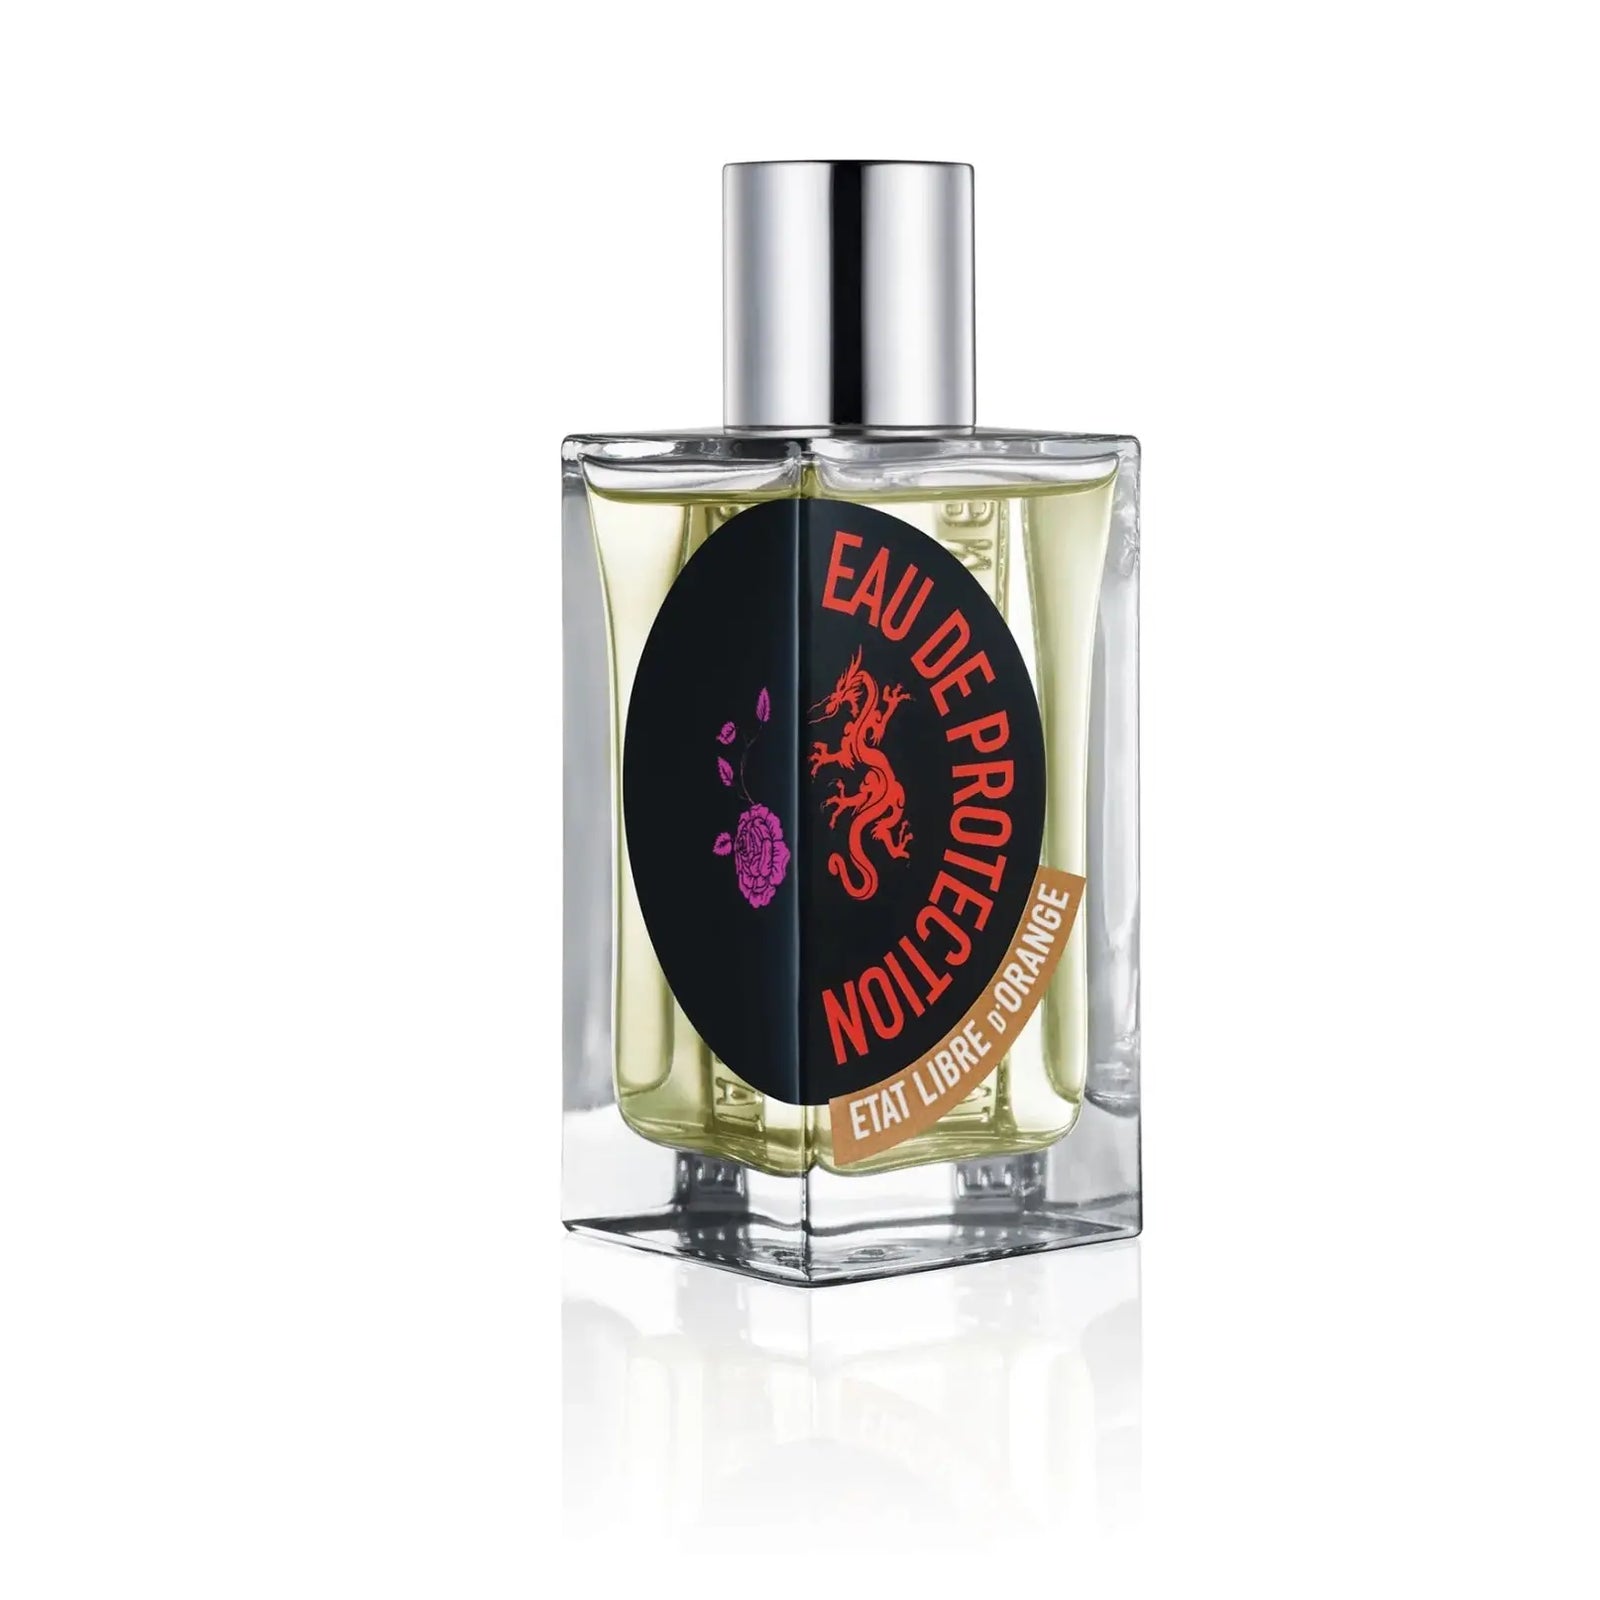 Etat Libre d'Orange Eau de Protection For Women 100ml Imported Perfumes & Beauty Store